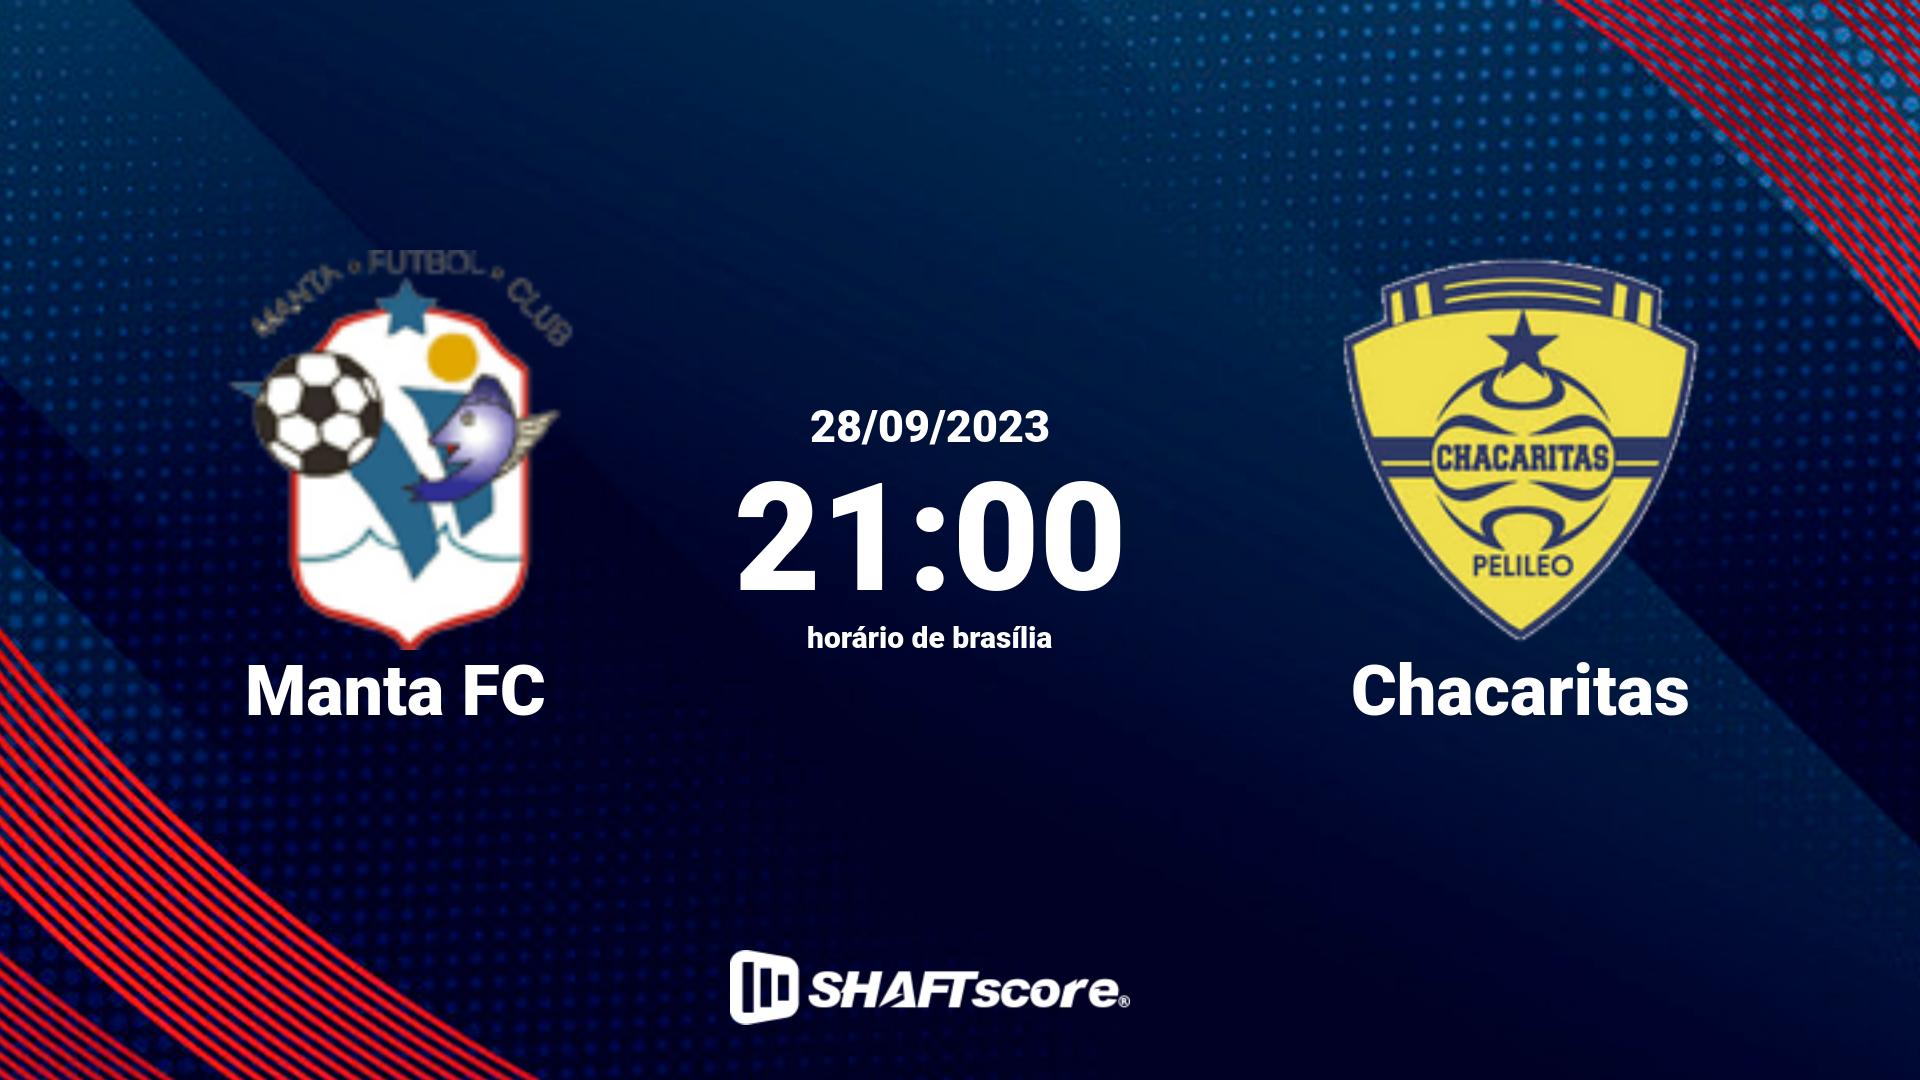 Estatísticas do jogo Manta FC vs Chacaritas 28.09 21:00